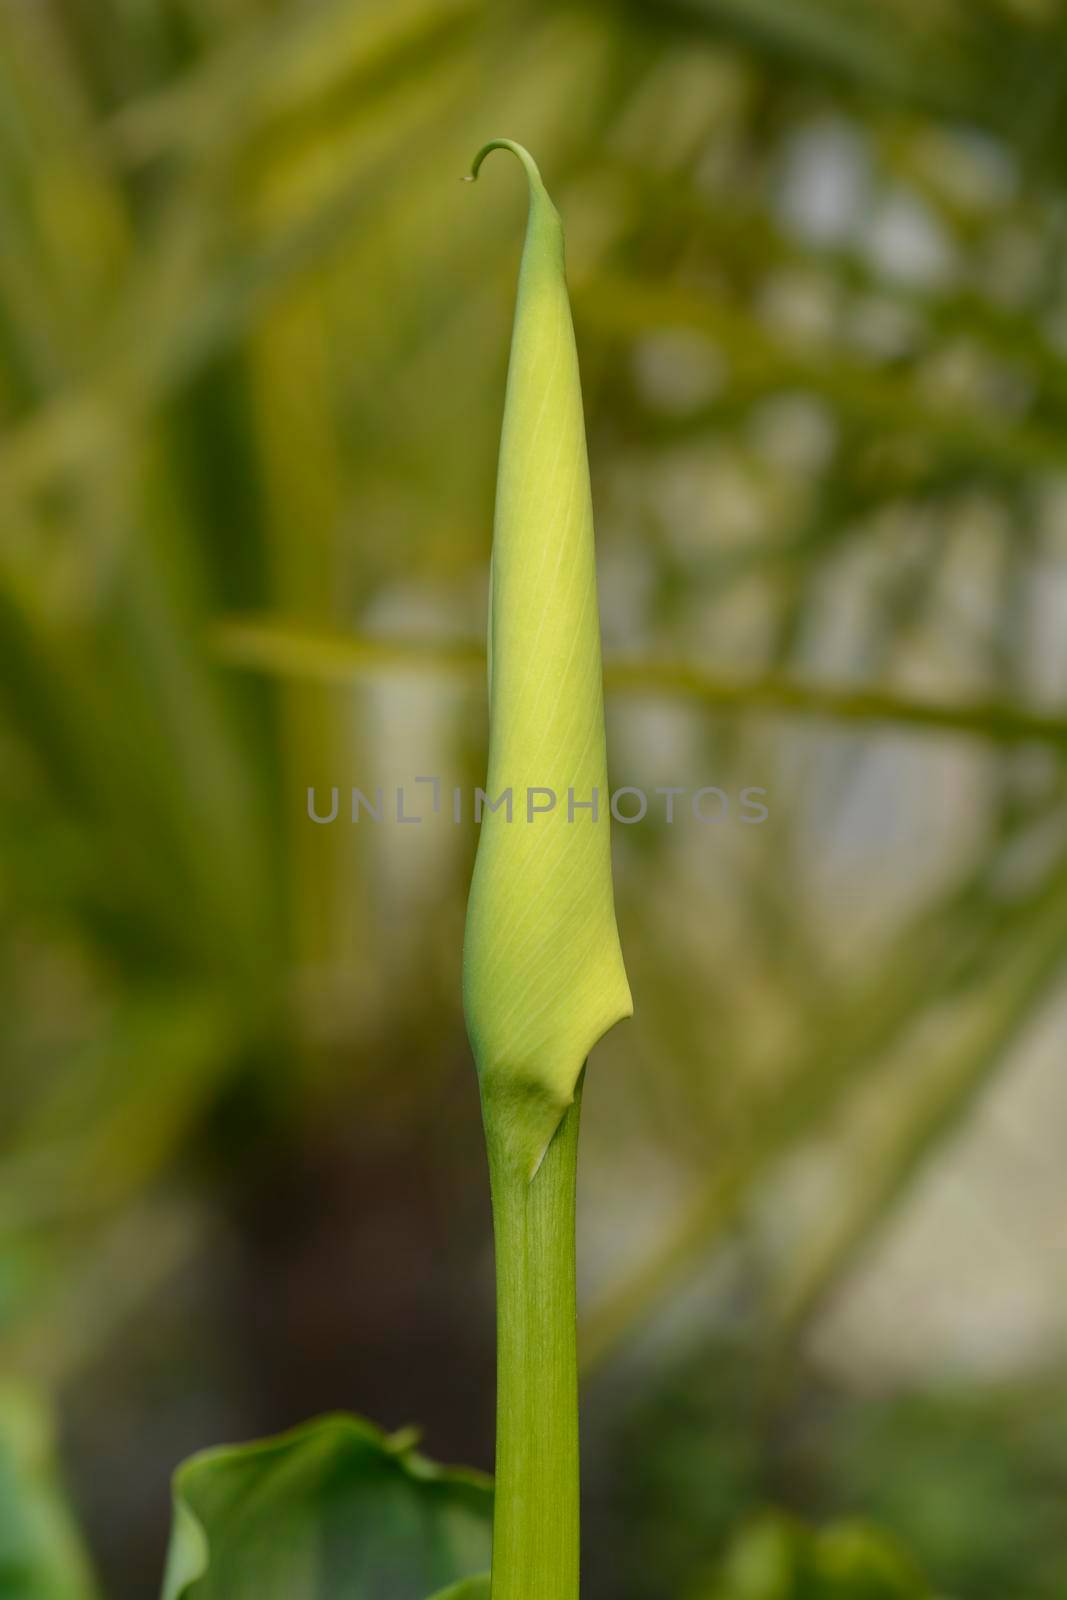 Garden calla lily by nahhan